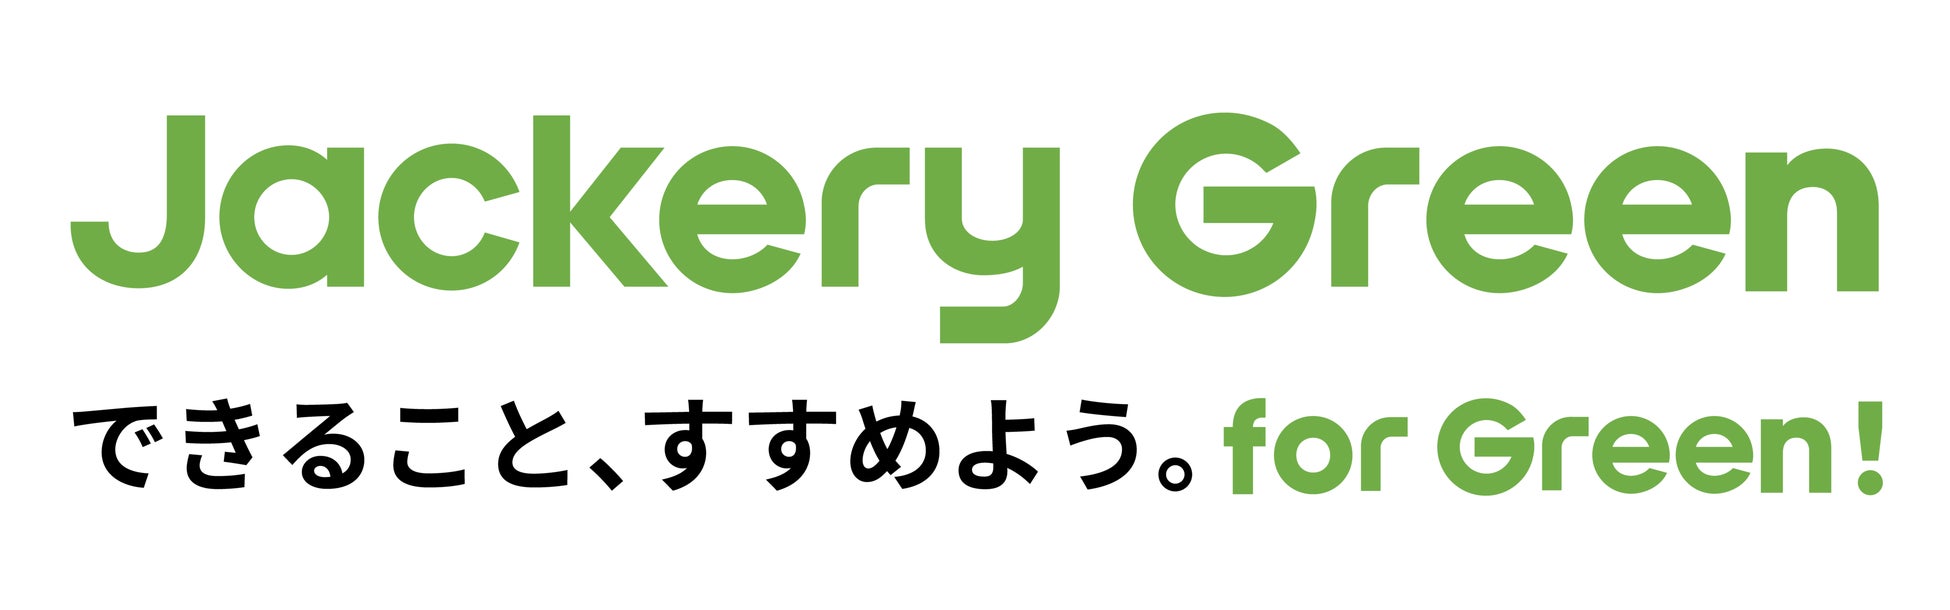 【Jackery Japan】日本の多様な自然環境・アウトドアフィールドを保護する団体「コンサベーション・アライアンス・ジャパン」にピナクルメンバーとして加盟のサブ画像2